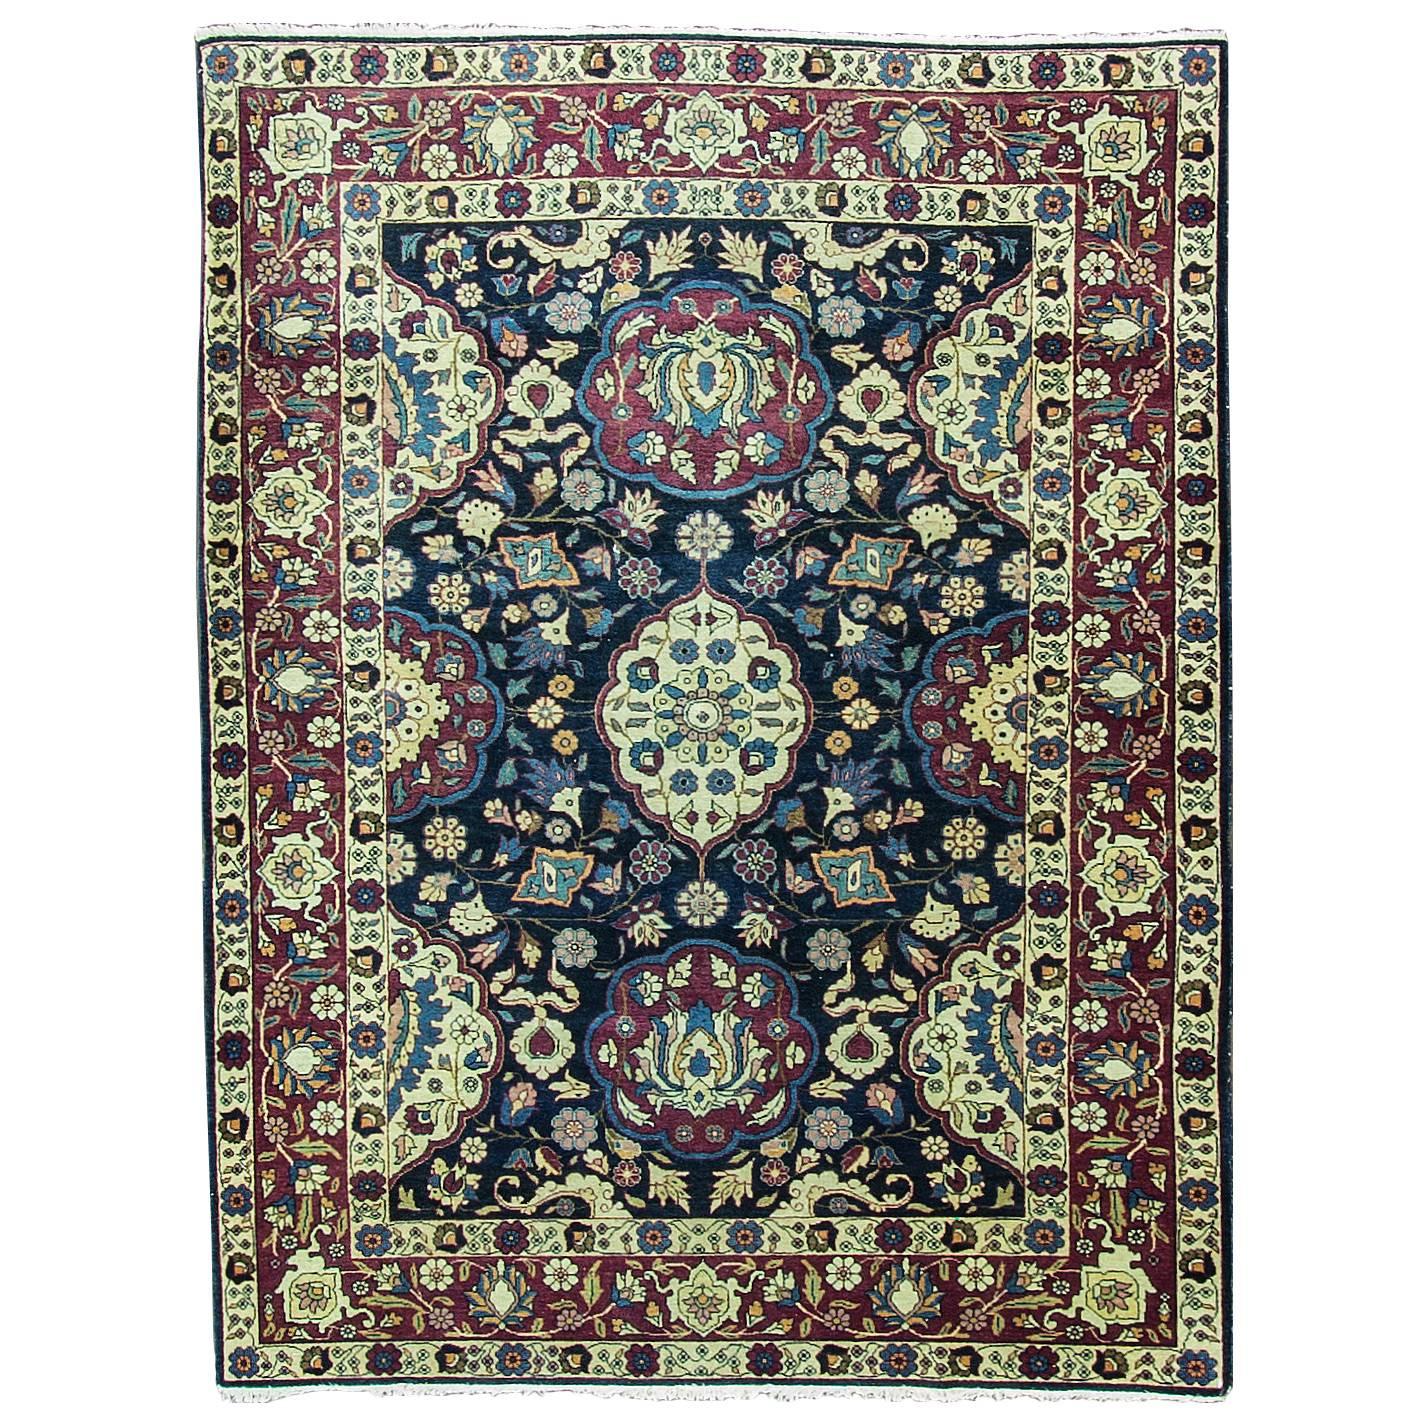 Antique Persian Tabriz Carpet, 4'6" x 6' For Sale